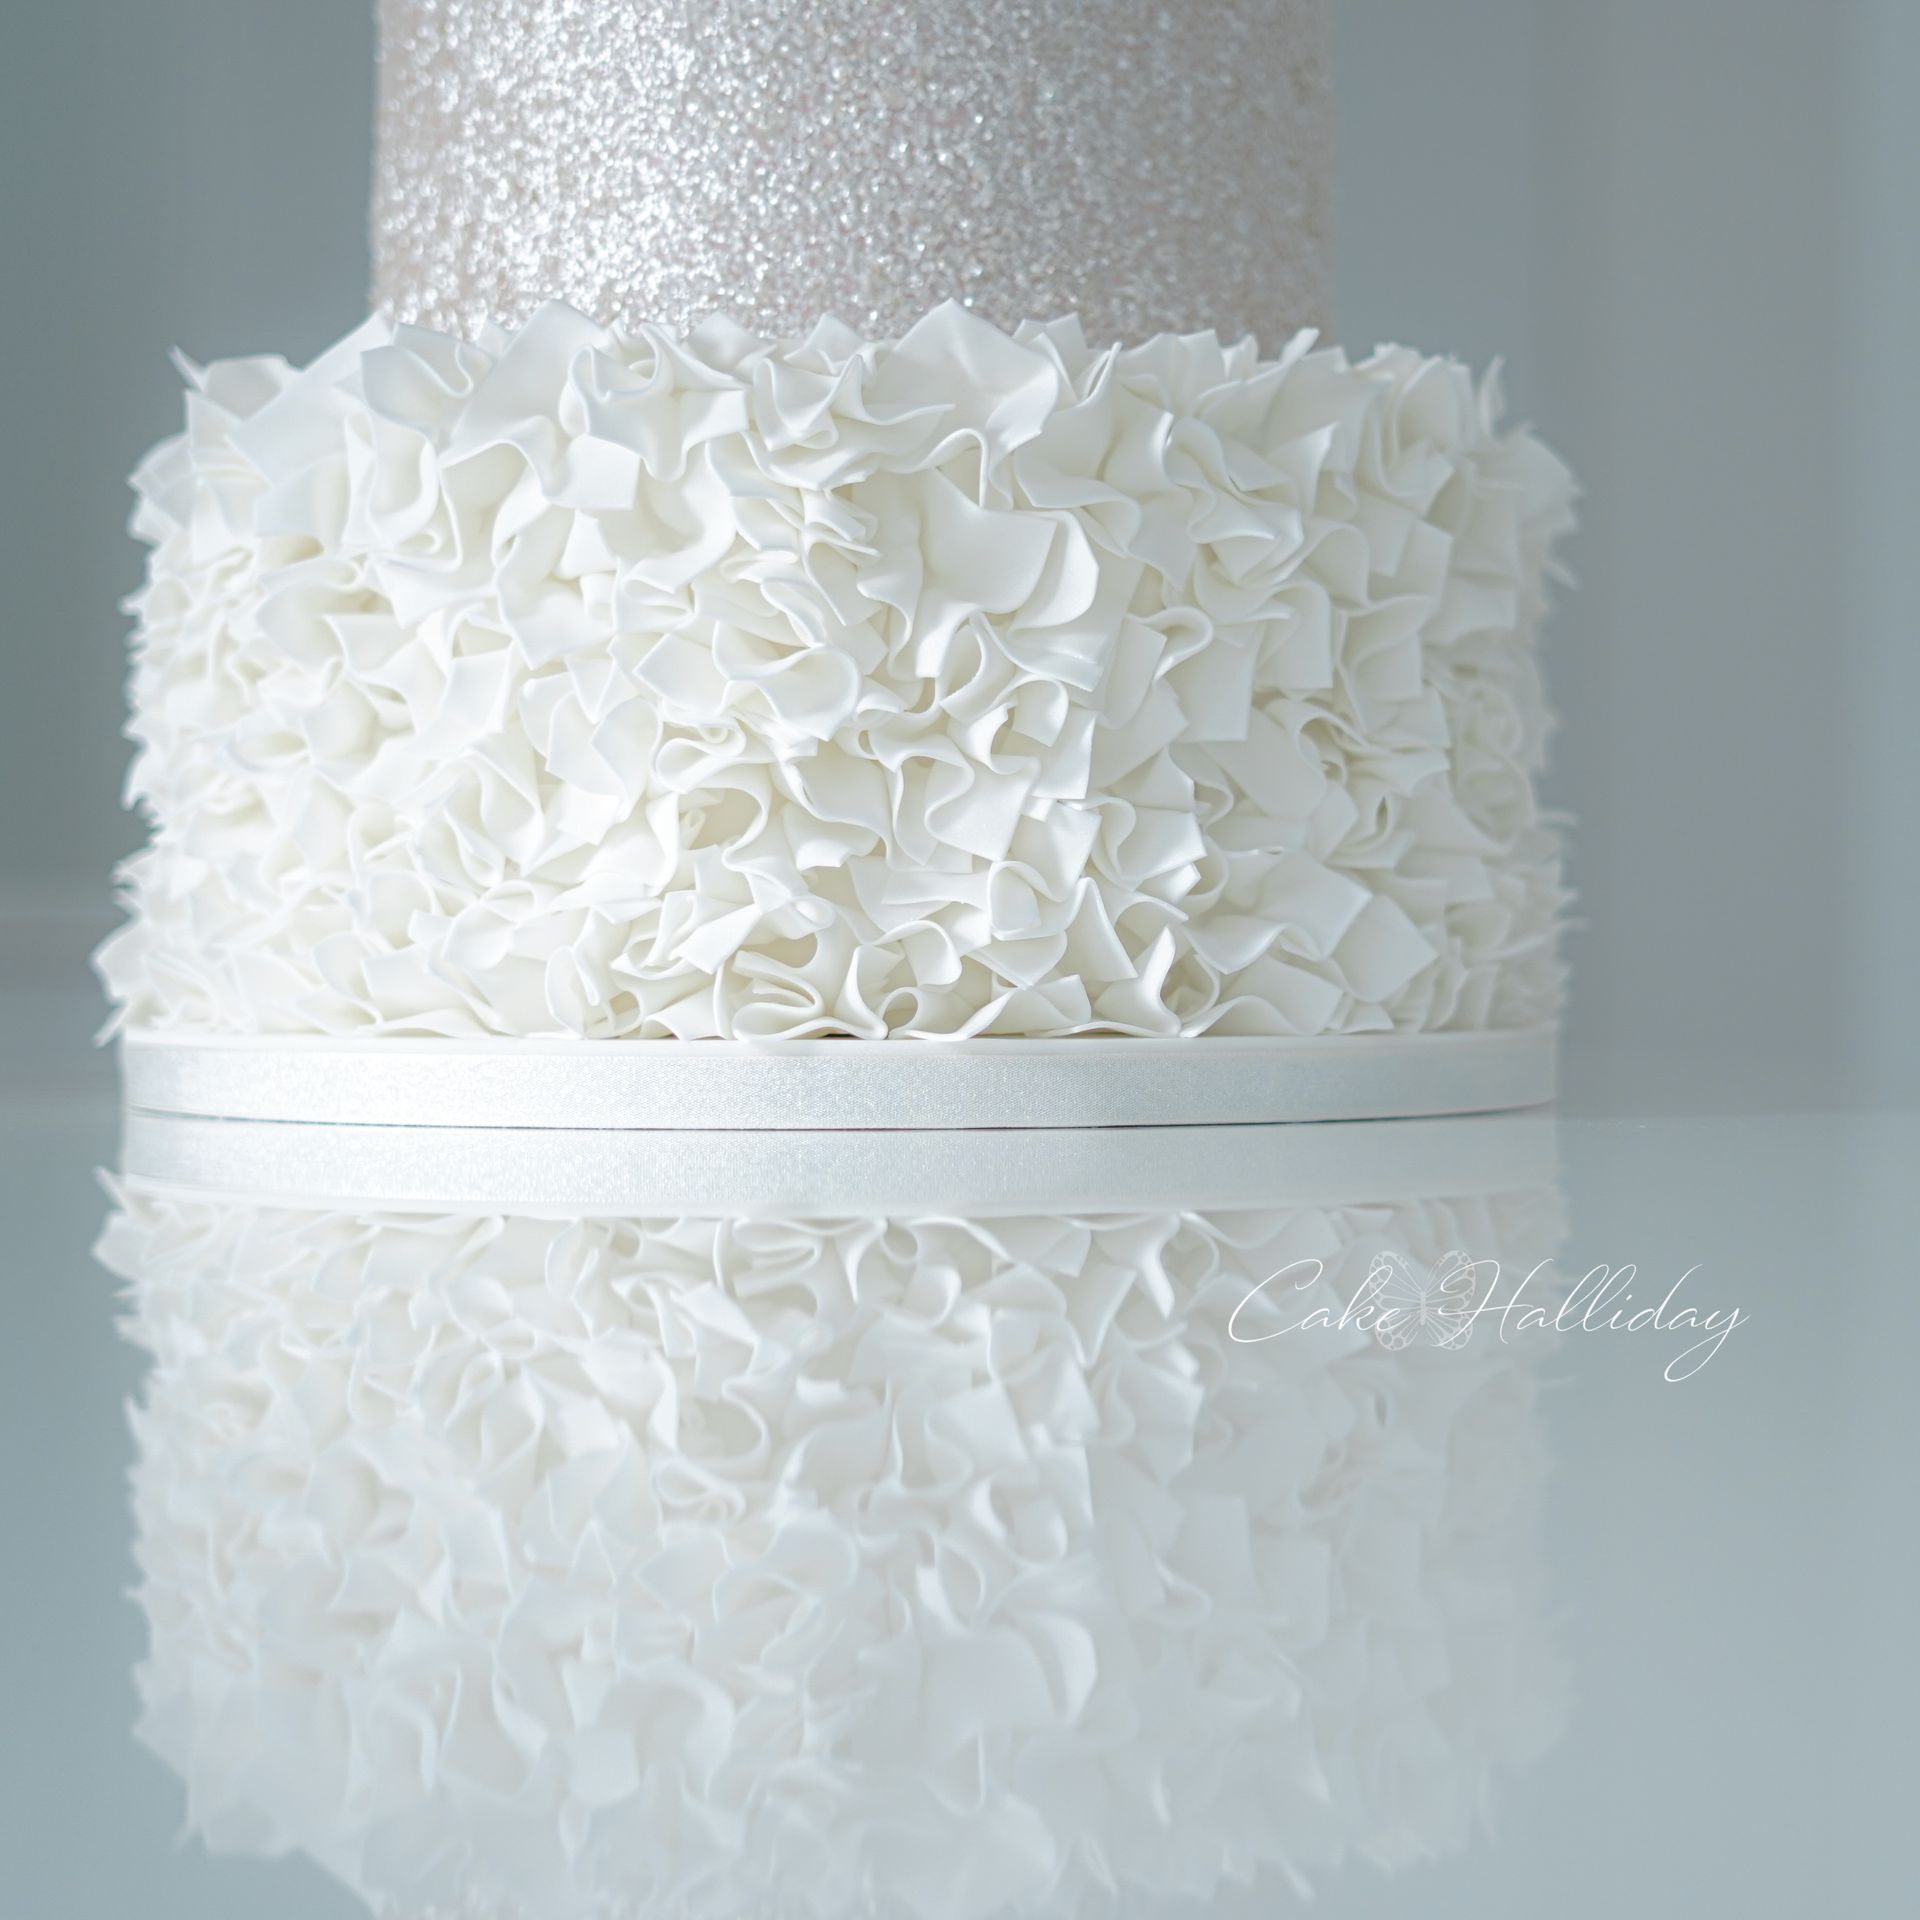 White wedding cake ruffles